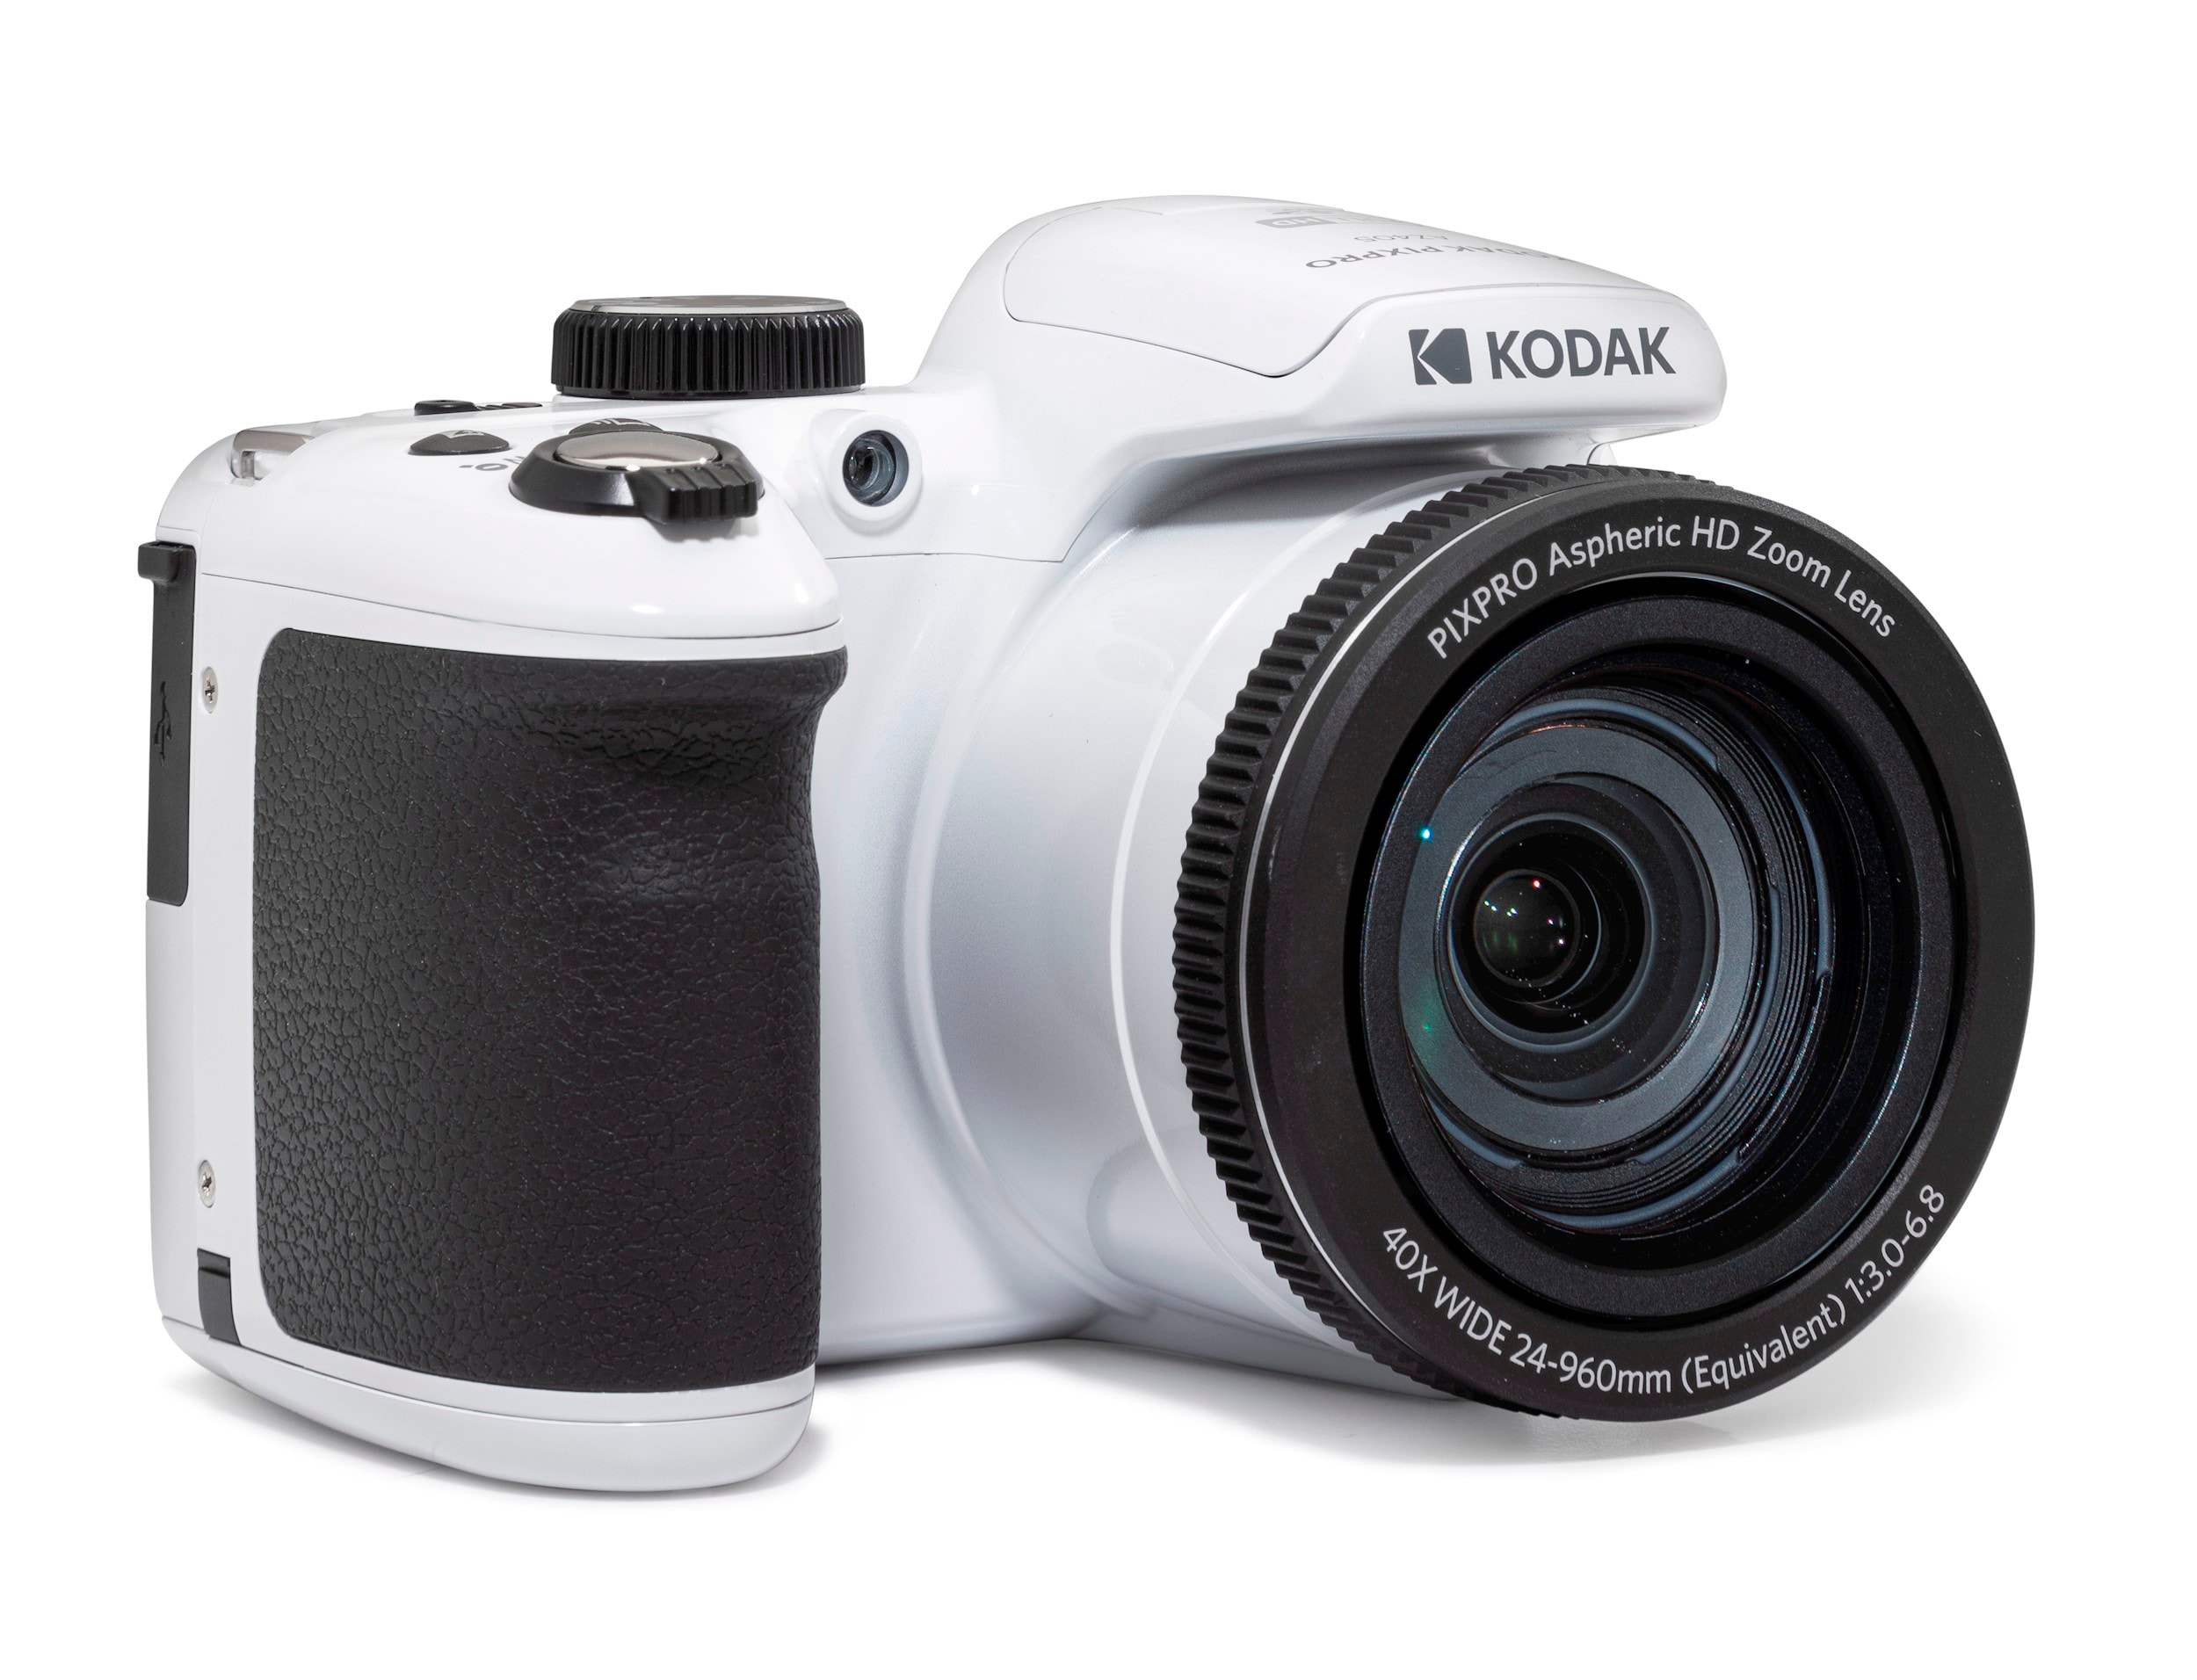 Kodak pixpro astro zoom az405 blanc - appareil photo numérique